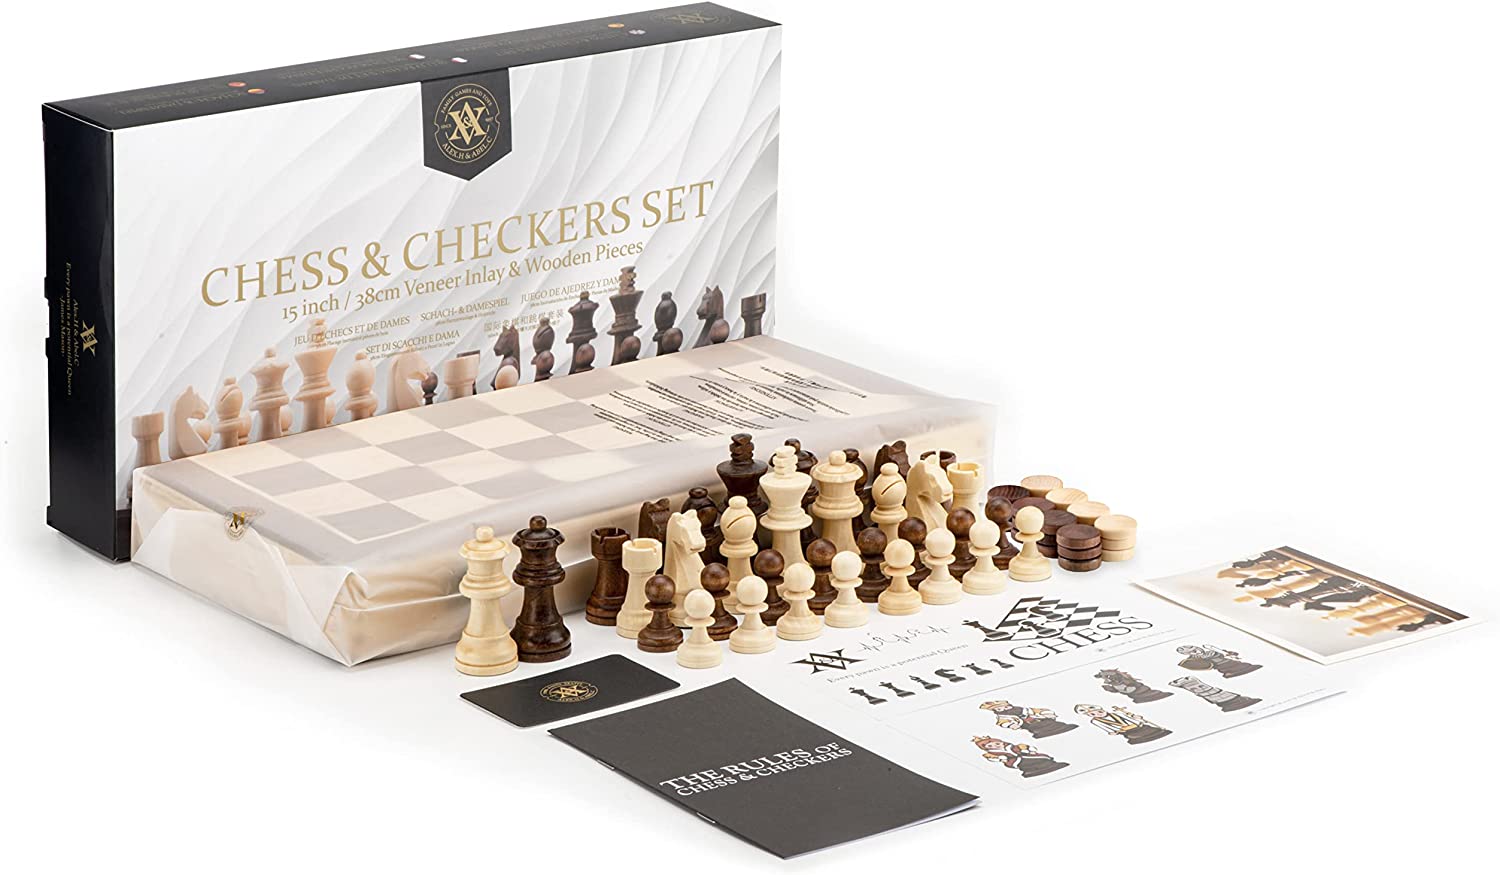 Juego de ajedrez y damas de madera plegable A&A